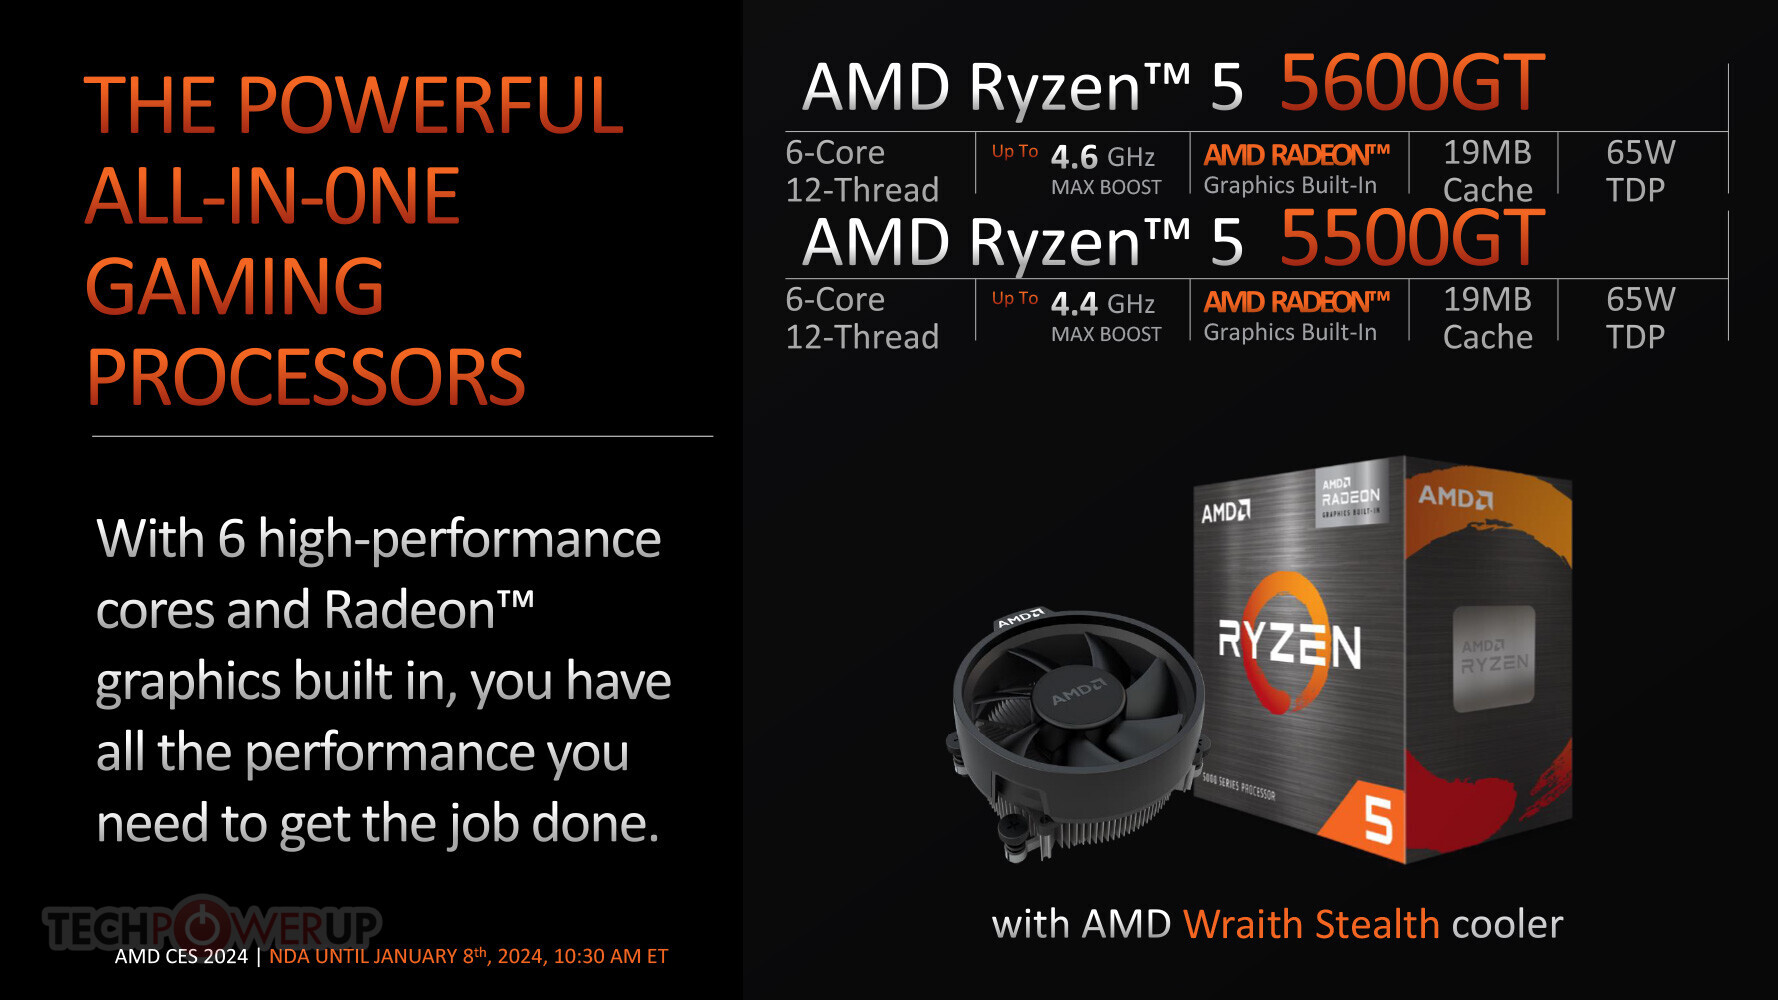 AMD RYZEN 7 5800X 3D 4.50GHZ 8 CORE SKT AM4 96MB 105W WOF CHIP